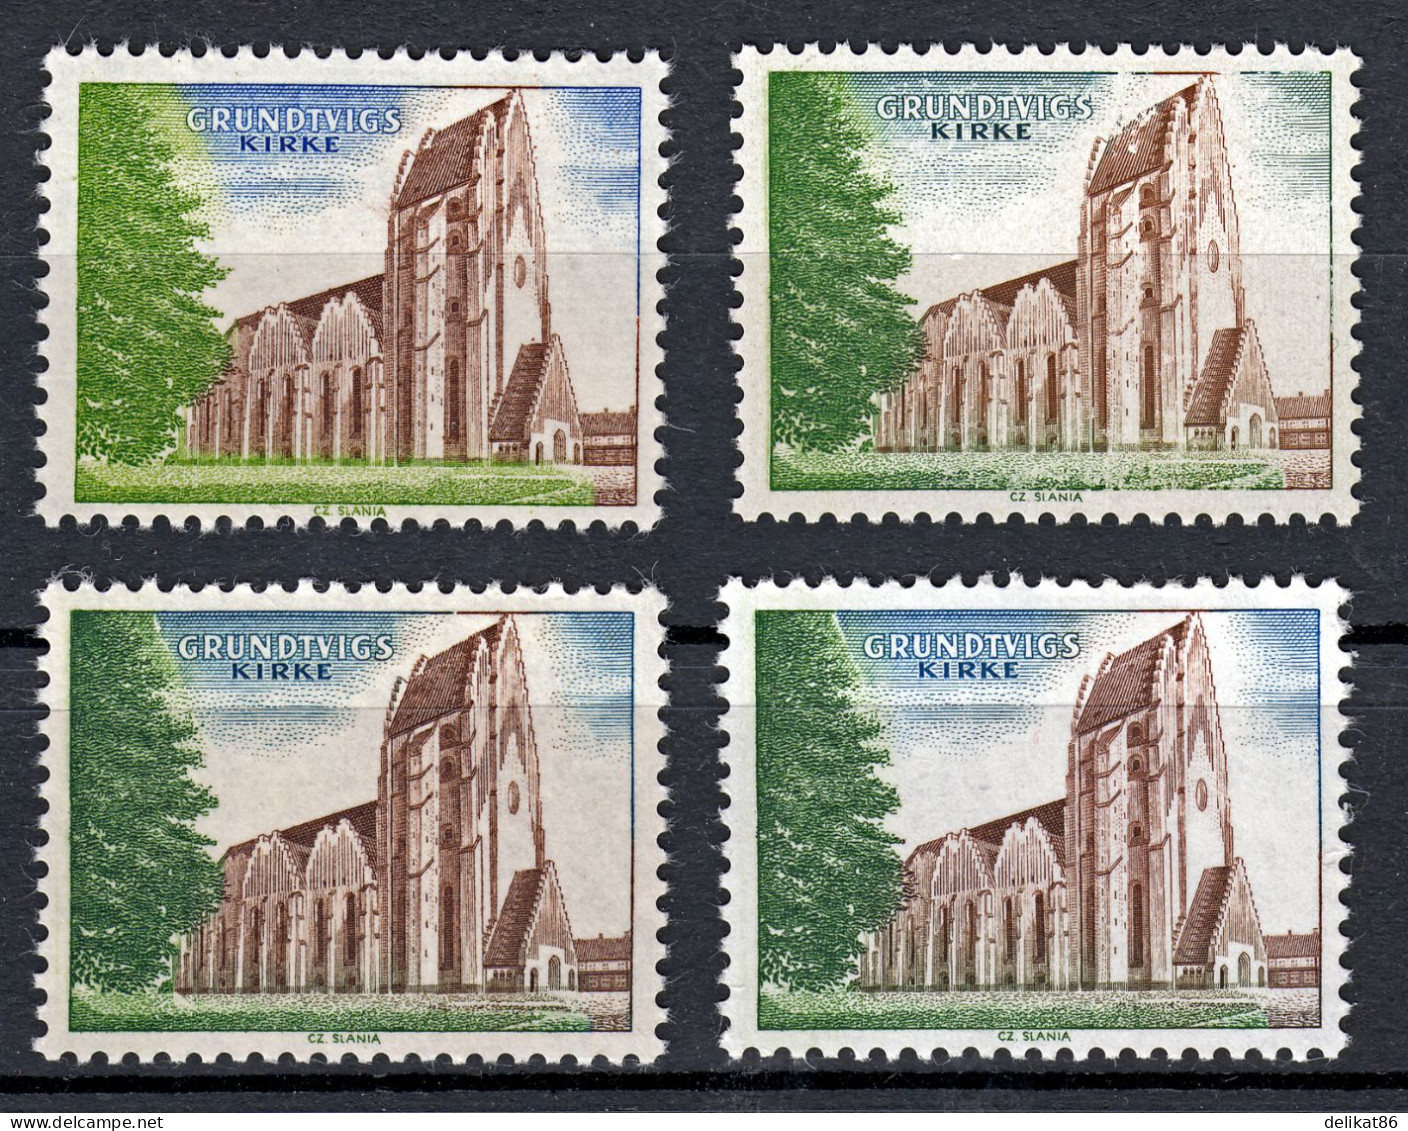 Probedruck Test Stamp Specimen Prøve Grundtvig Kirke Slania 1968   4 Verschiedene Marken - Probe- Und Nachdrucke